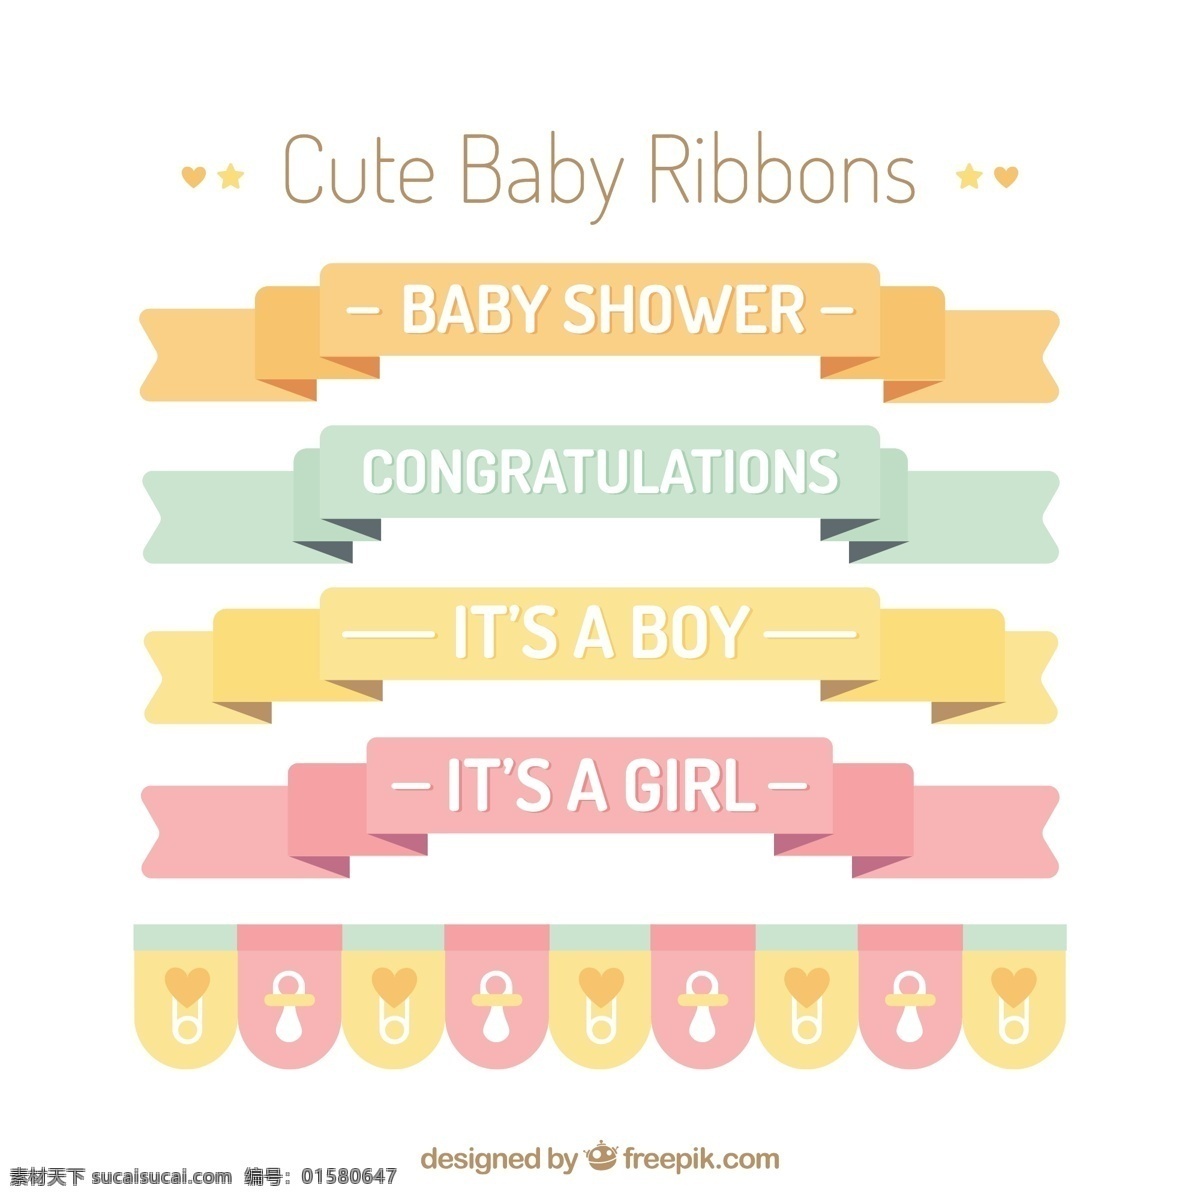 可爱 婴儿 丝带 平面设计 婴儿淋浴 庆祝 五颜六色 儿童 平面 装饰 新的 色彩 粉彩 公告 淋浴 出生 新生儿